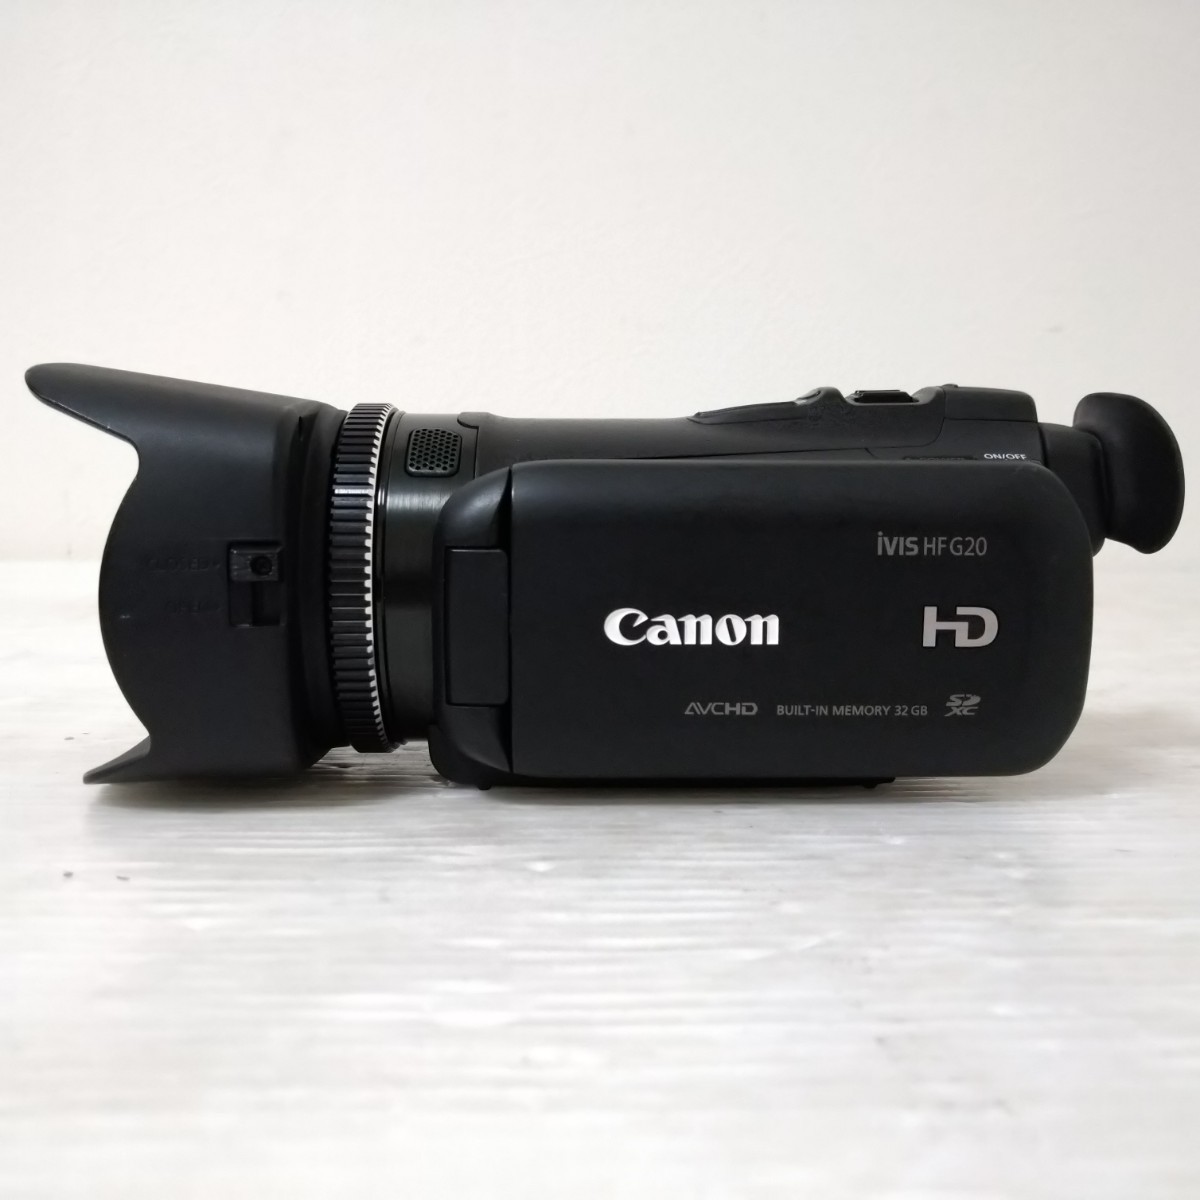 Canon iVIS HF G20 HD Video Camera キャノン HDビデオカメラ デジタル ビデオカメラ 内蔵HD32GB キヤノン デジカメ_画像2